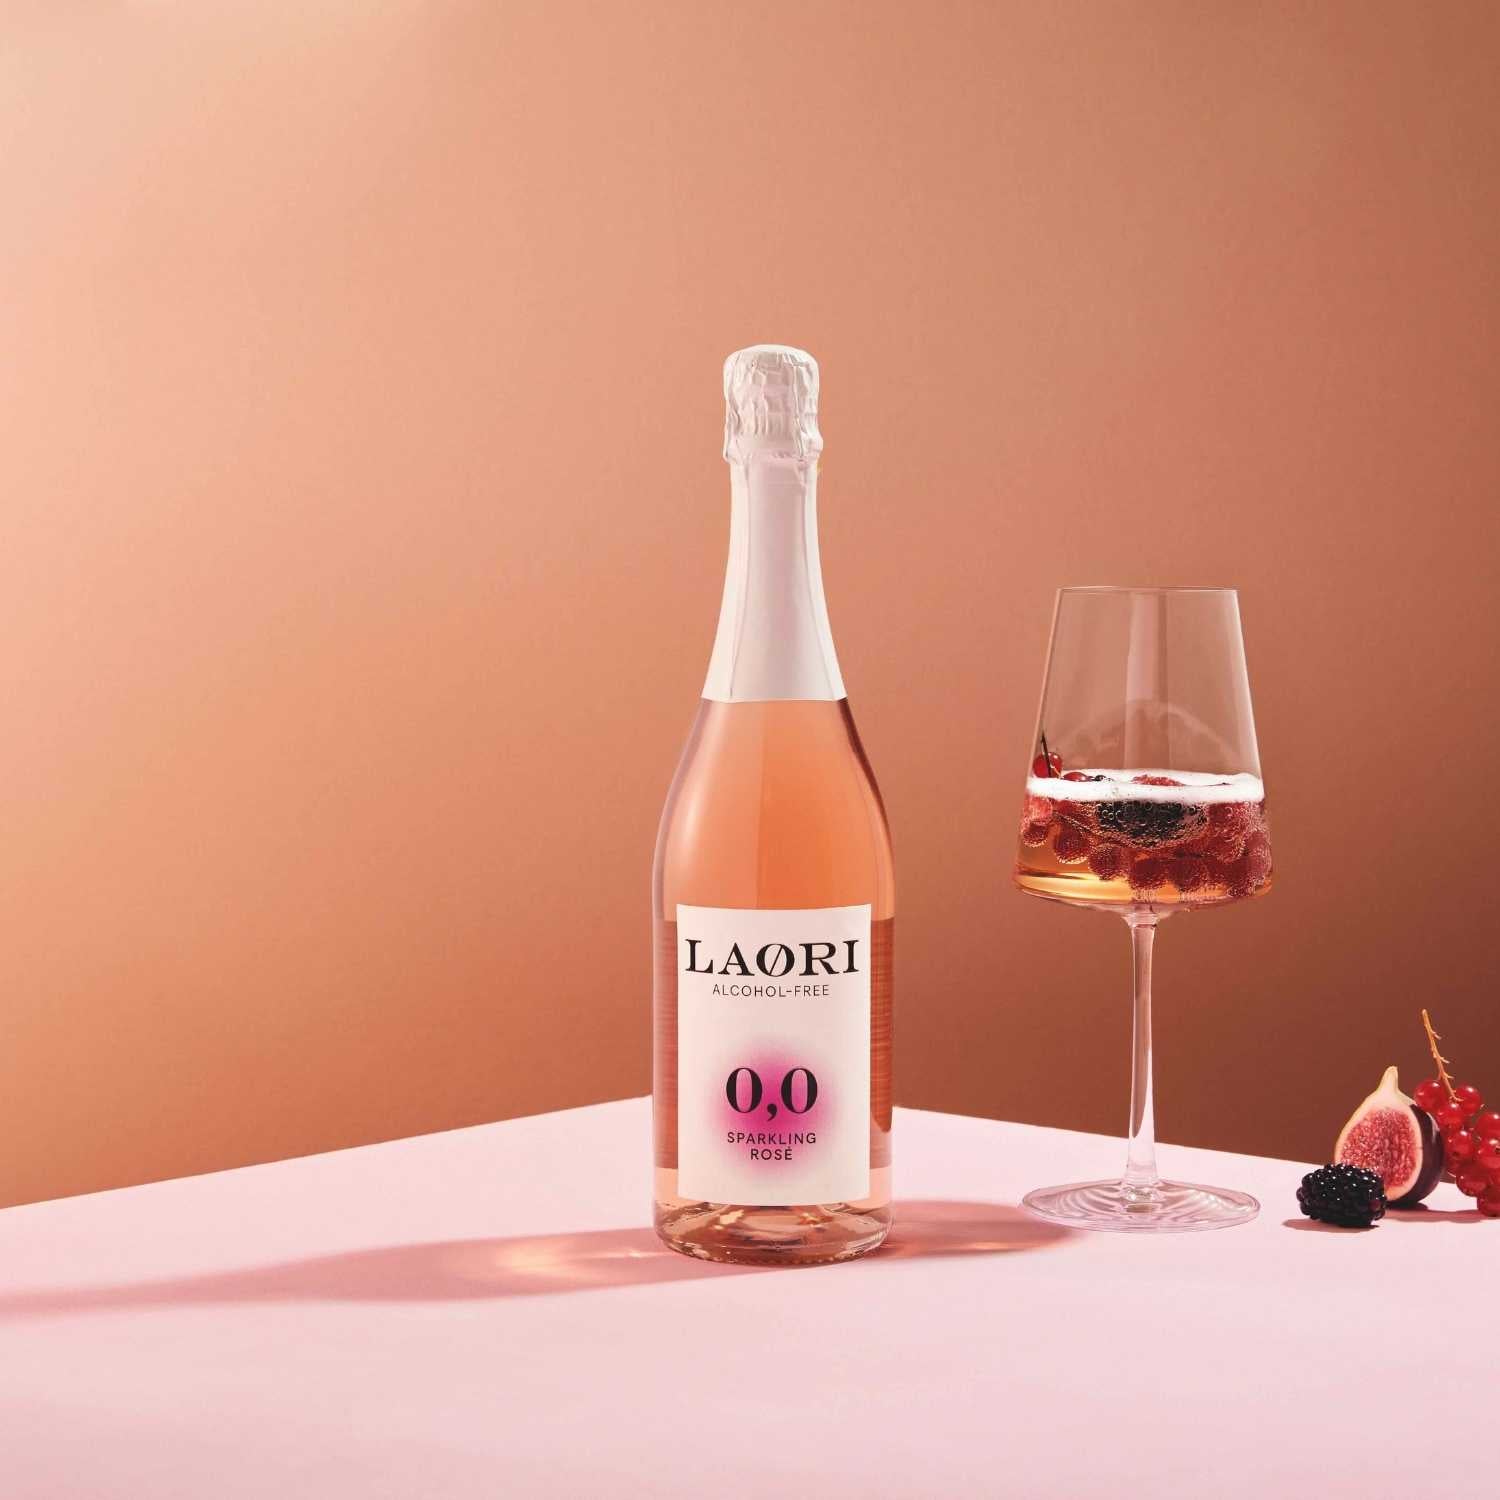 HAVE IT ALL: 3X LAORI SPARKLING Rosé (0.75L) - VALUE SET